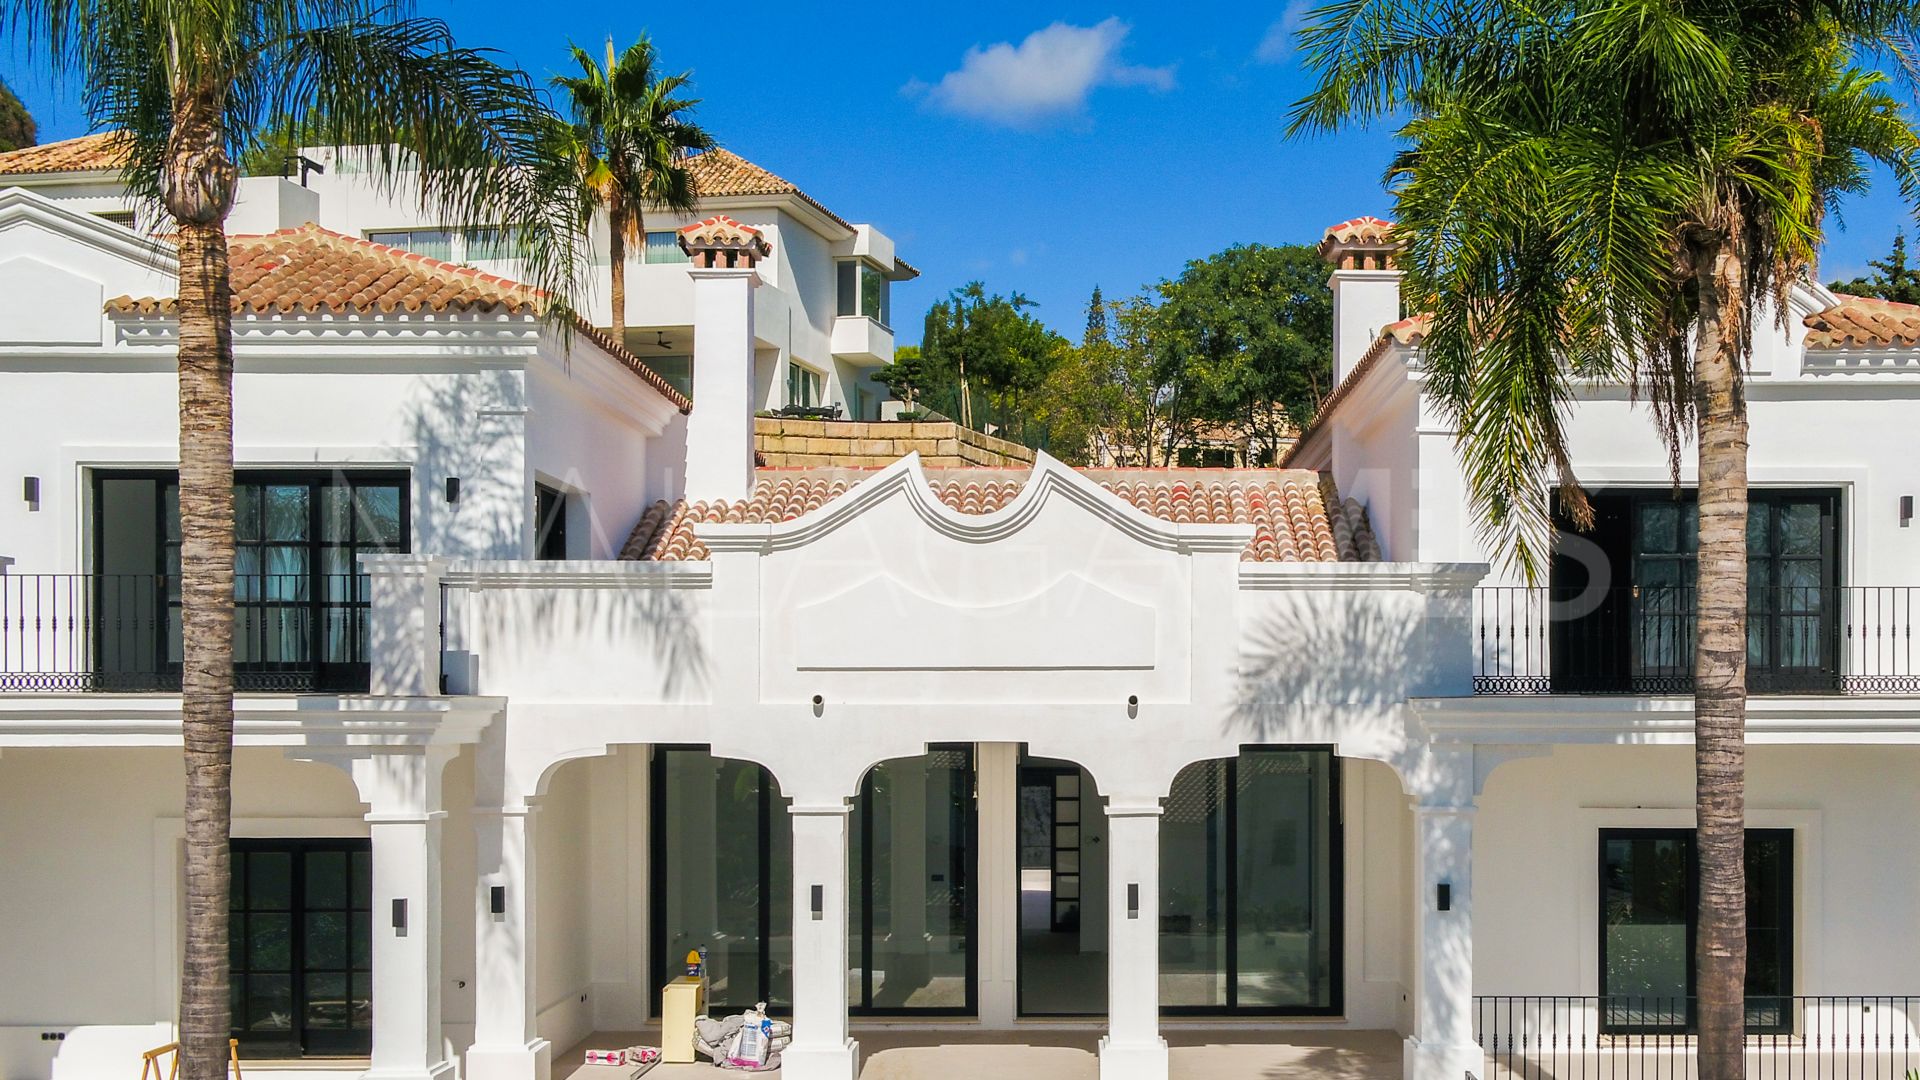 For sale villa in El Paraiso with 6 bedrooms